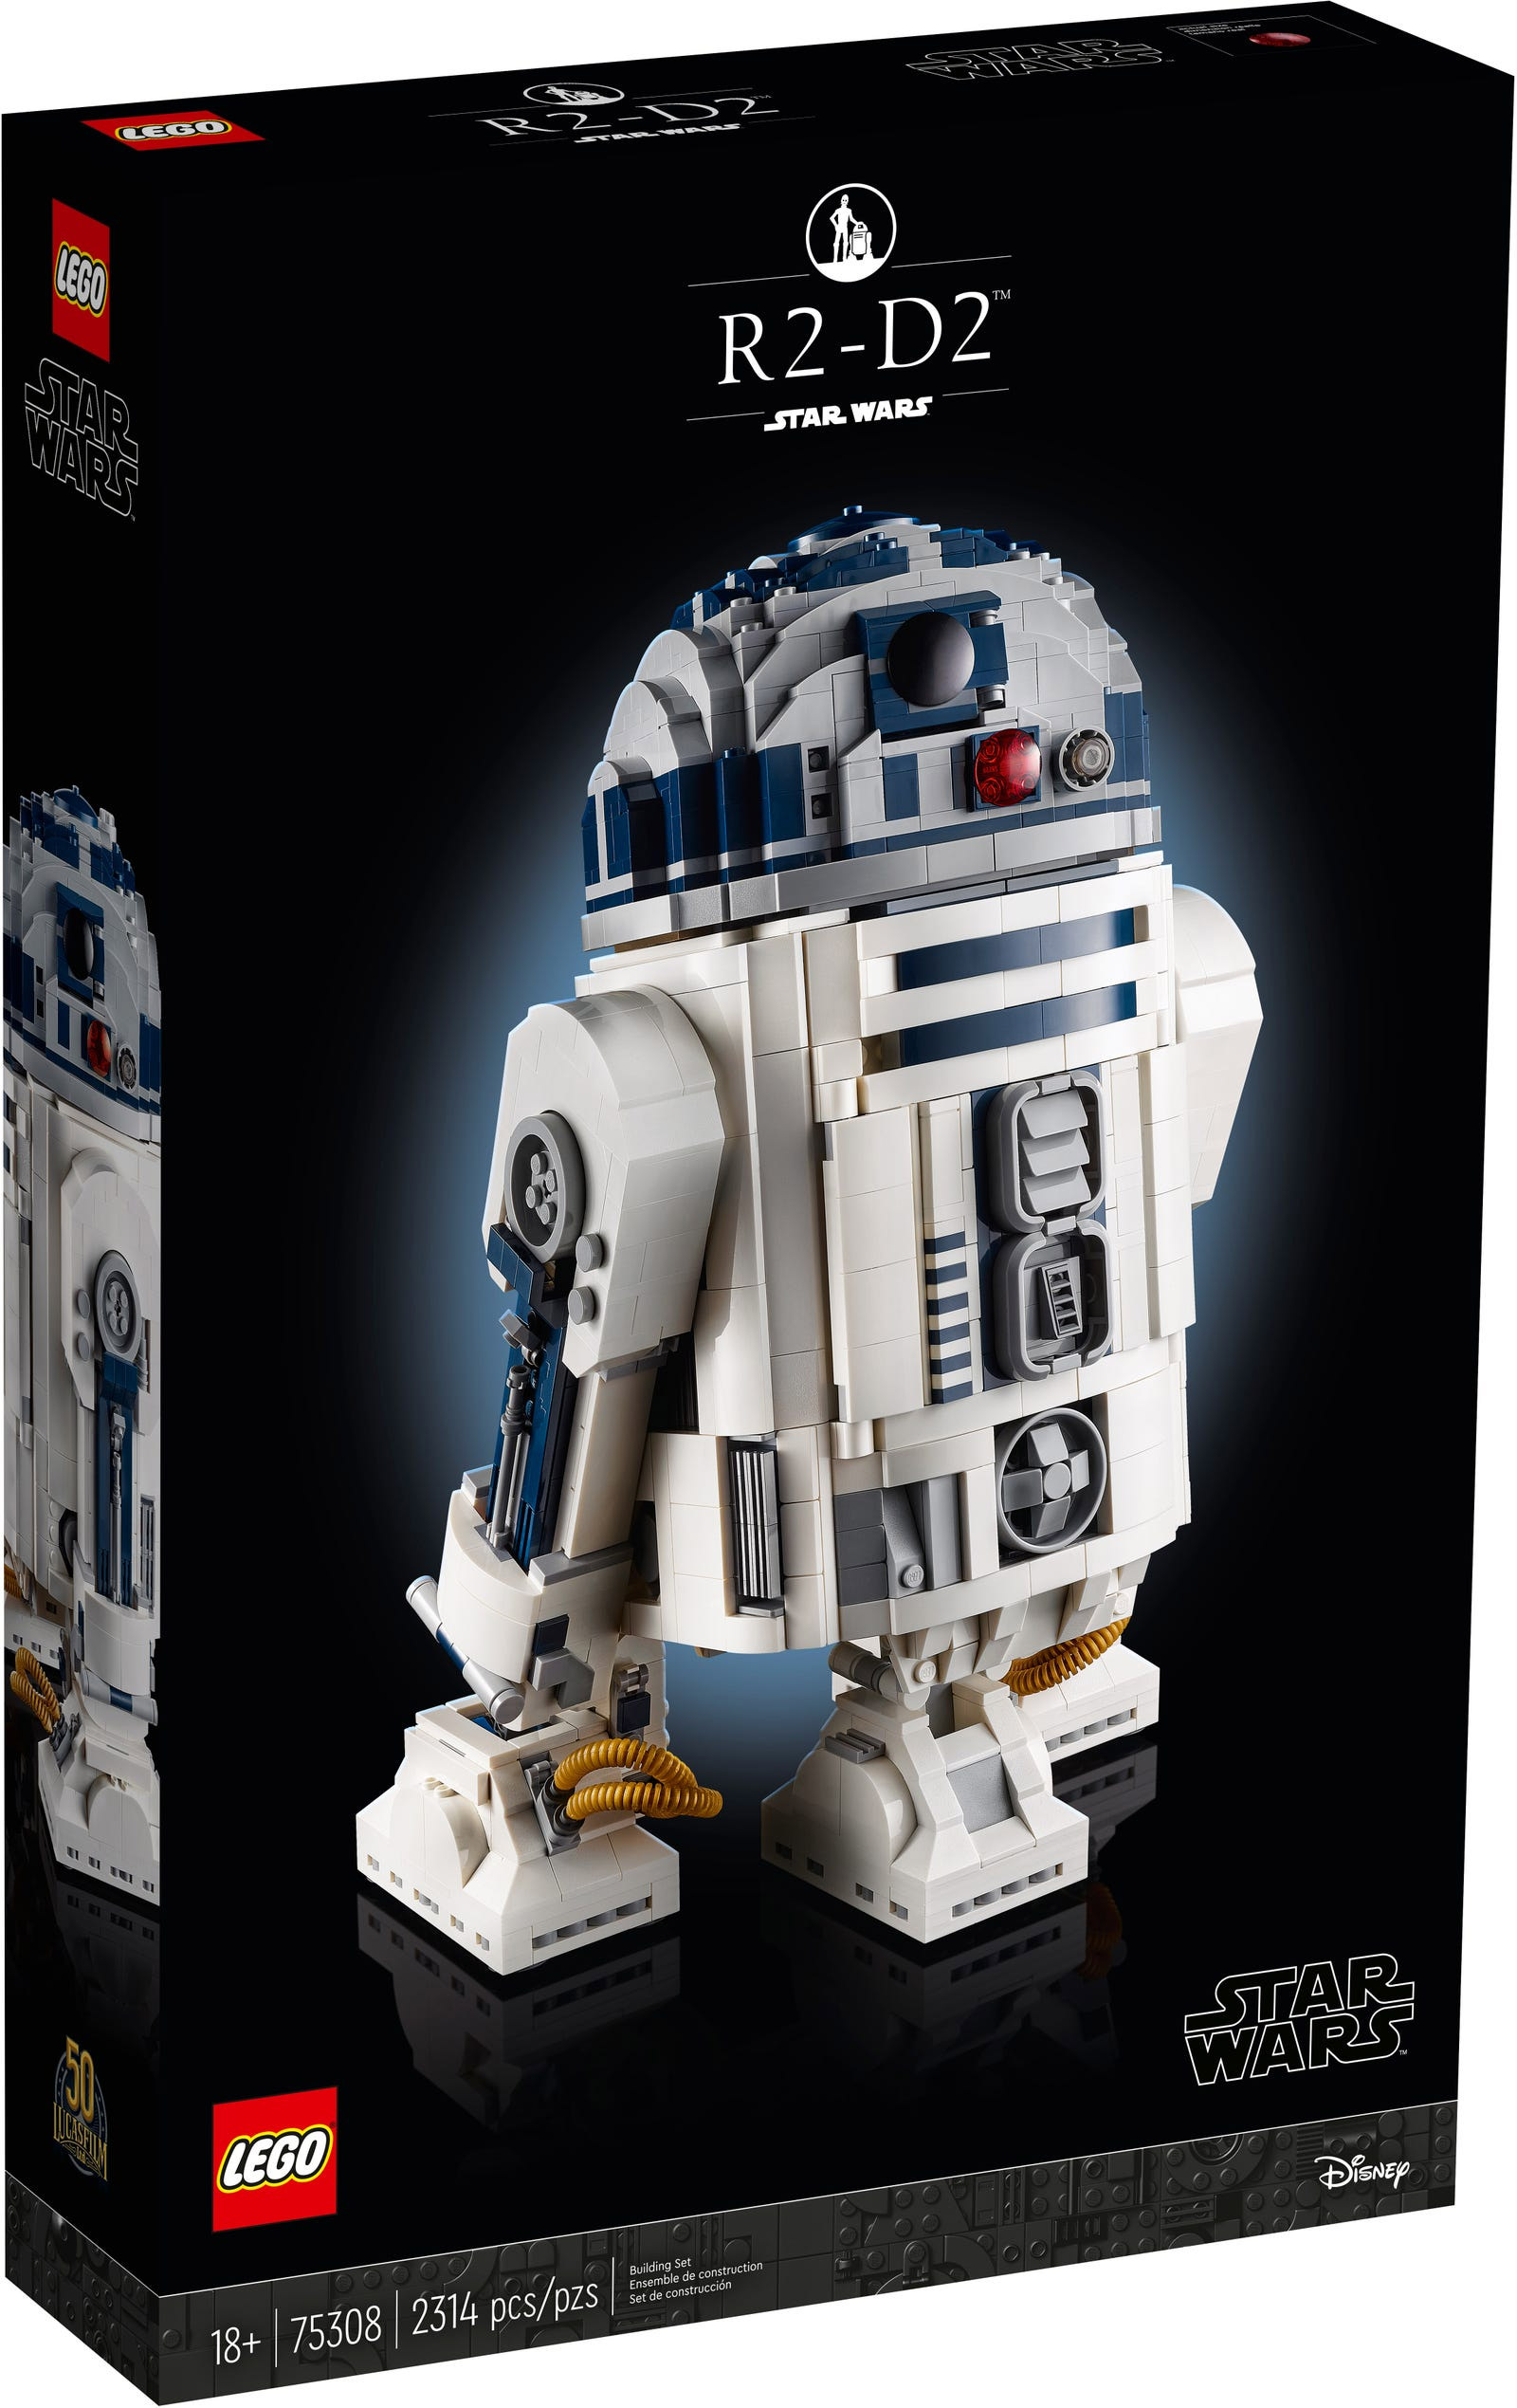 LEGO Star Wars 75308 pas cher, R2-D2